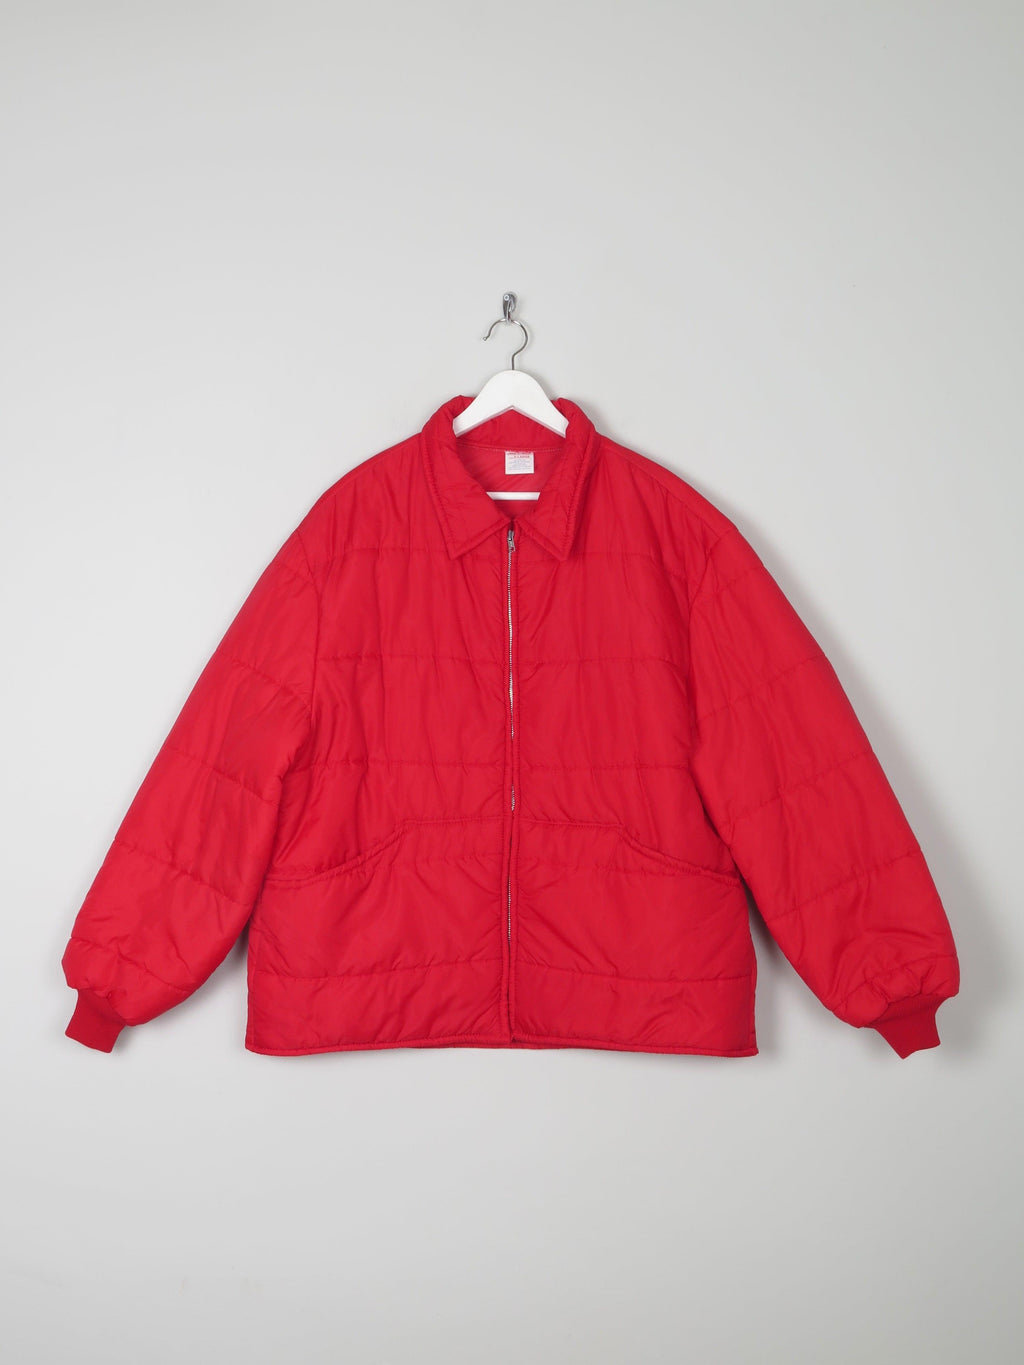 Men's Red Puffer Vintage  Jacket L/XL - The Harlequin